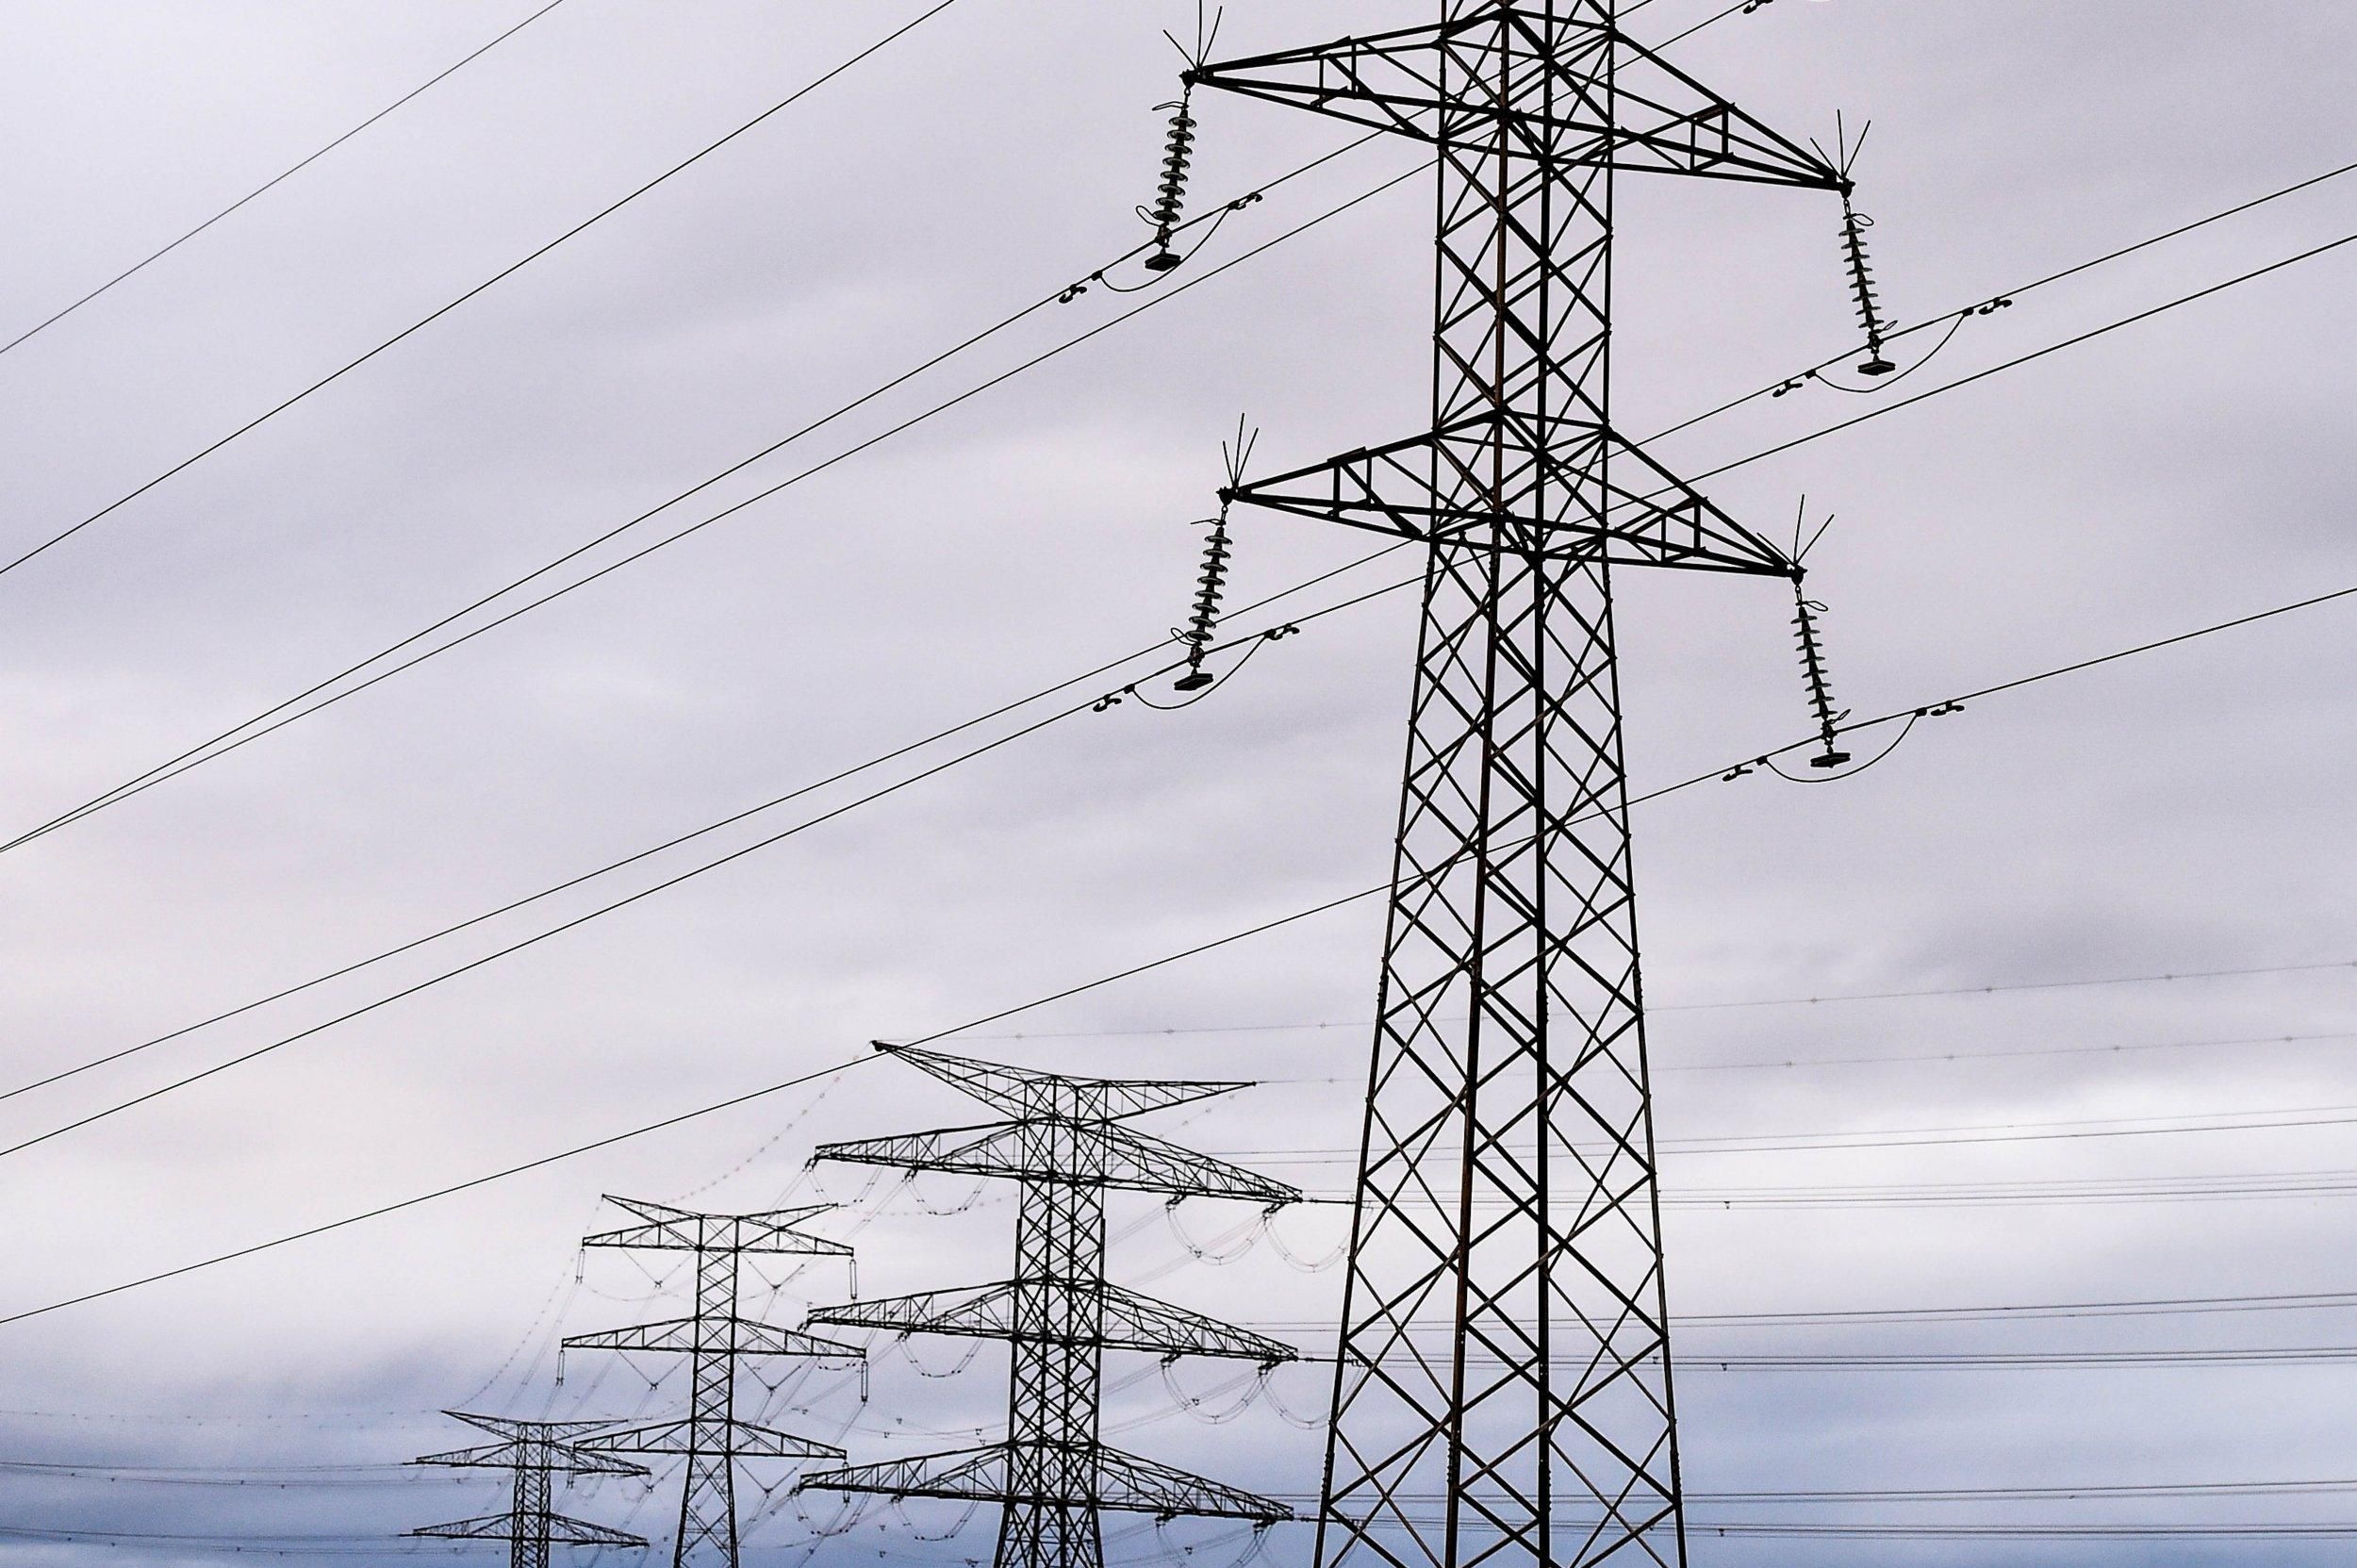 Підвищення тарифів буде в будь-якому випадку: експерт про заборону купівлі електроенергії в РФ